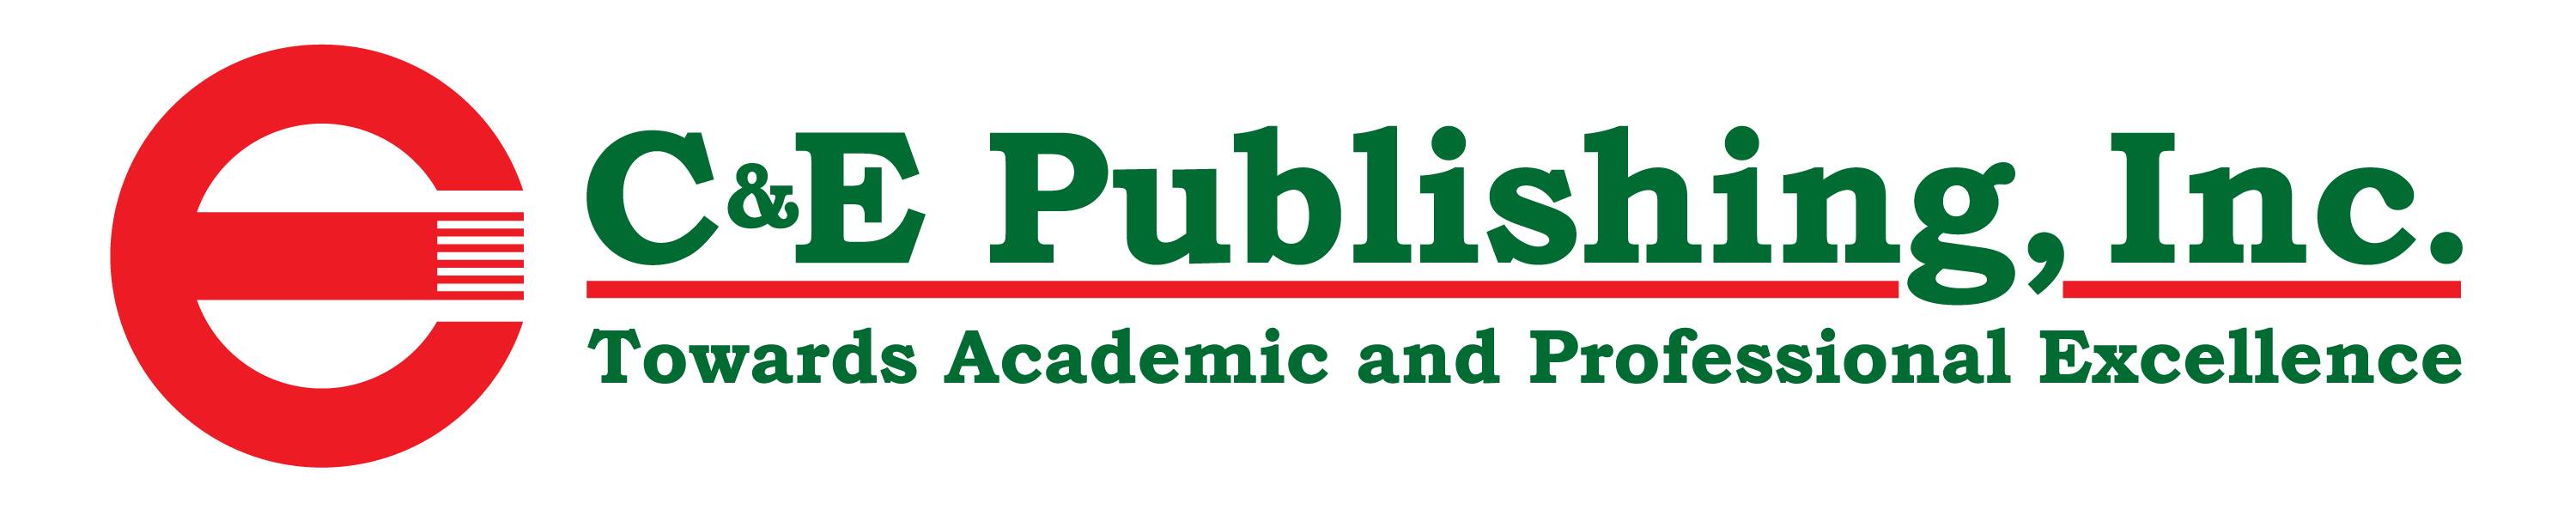 C&E Publishing - Filipiny_logo